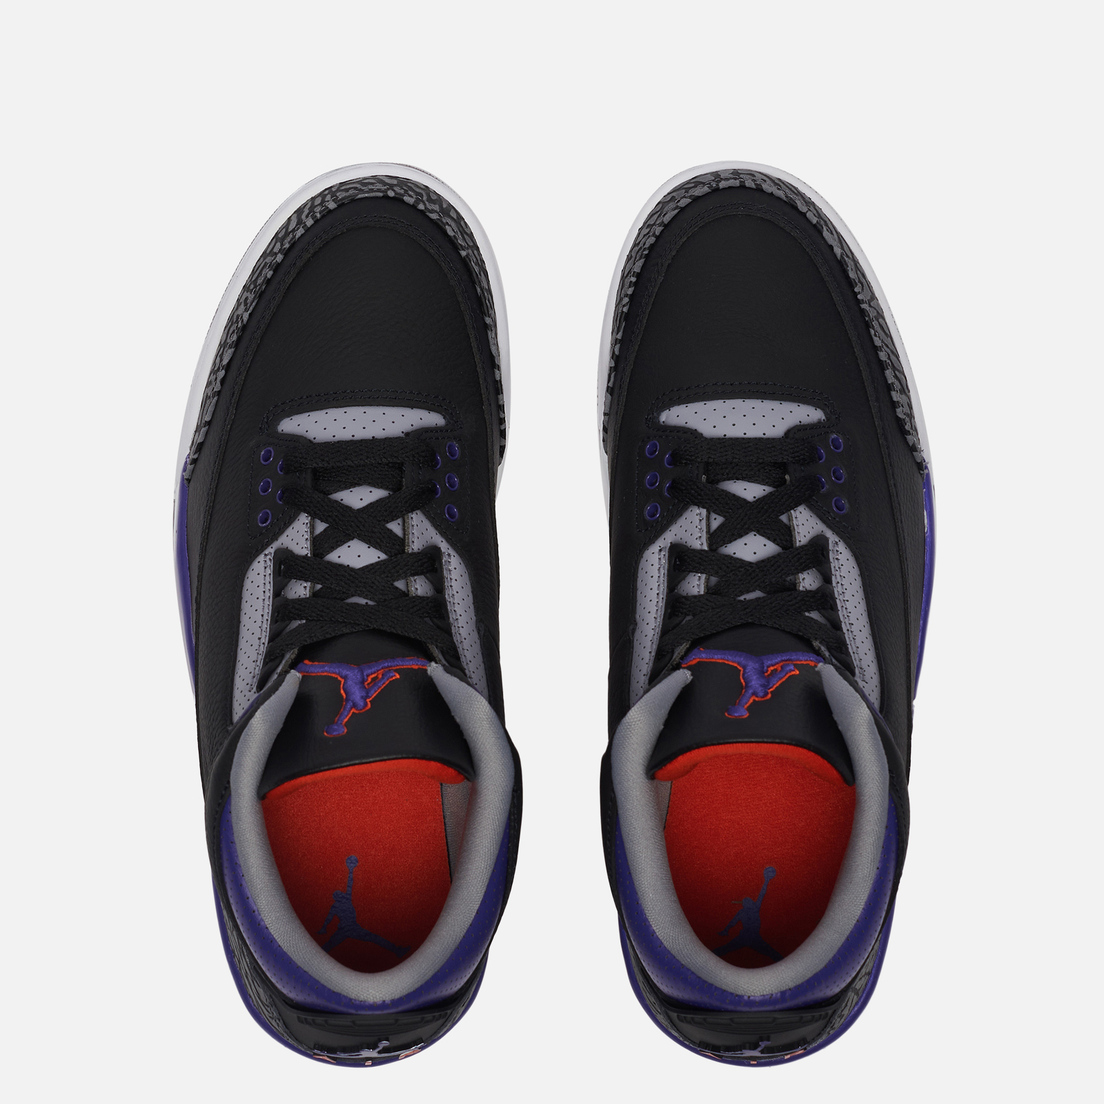 Jordan Мужские кроссовки Air Jordan 3 Retro